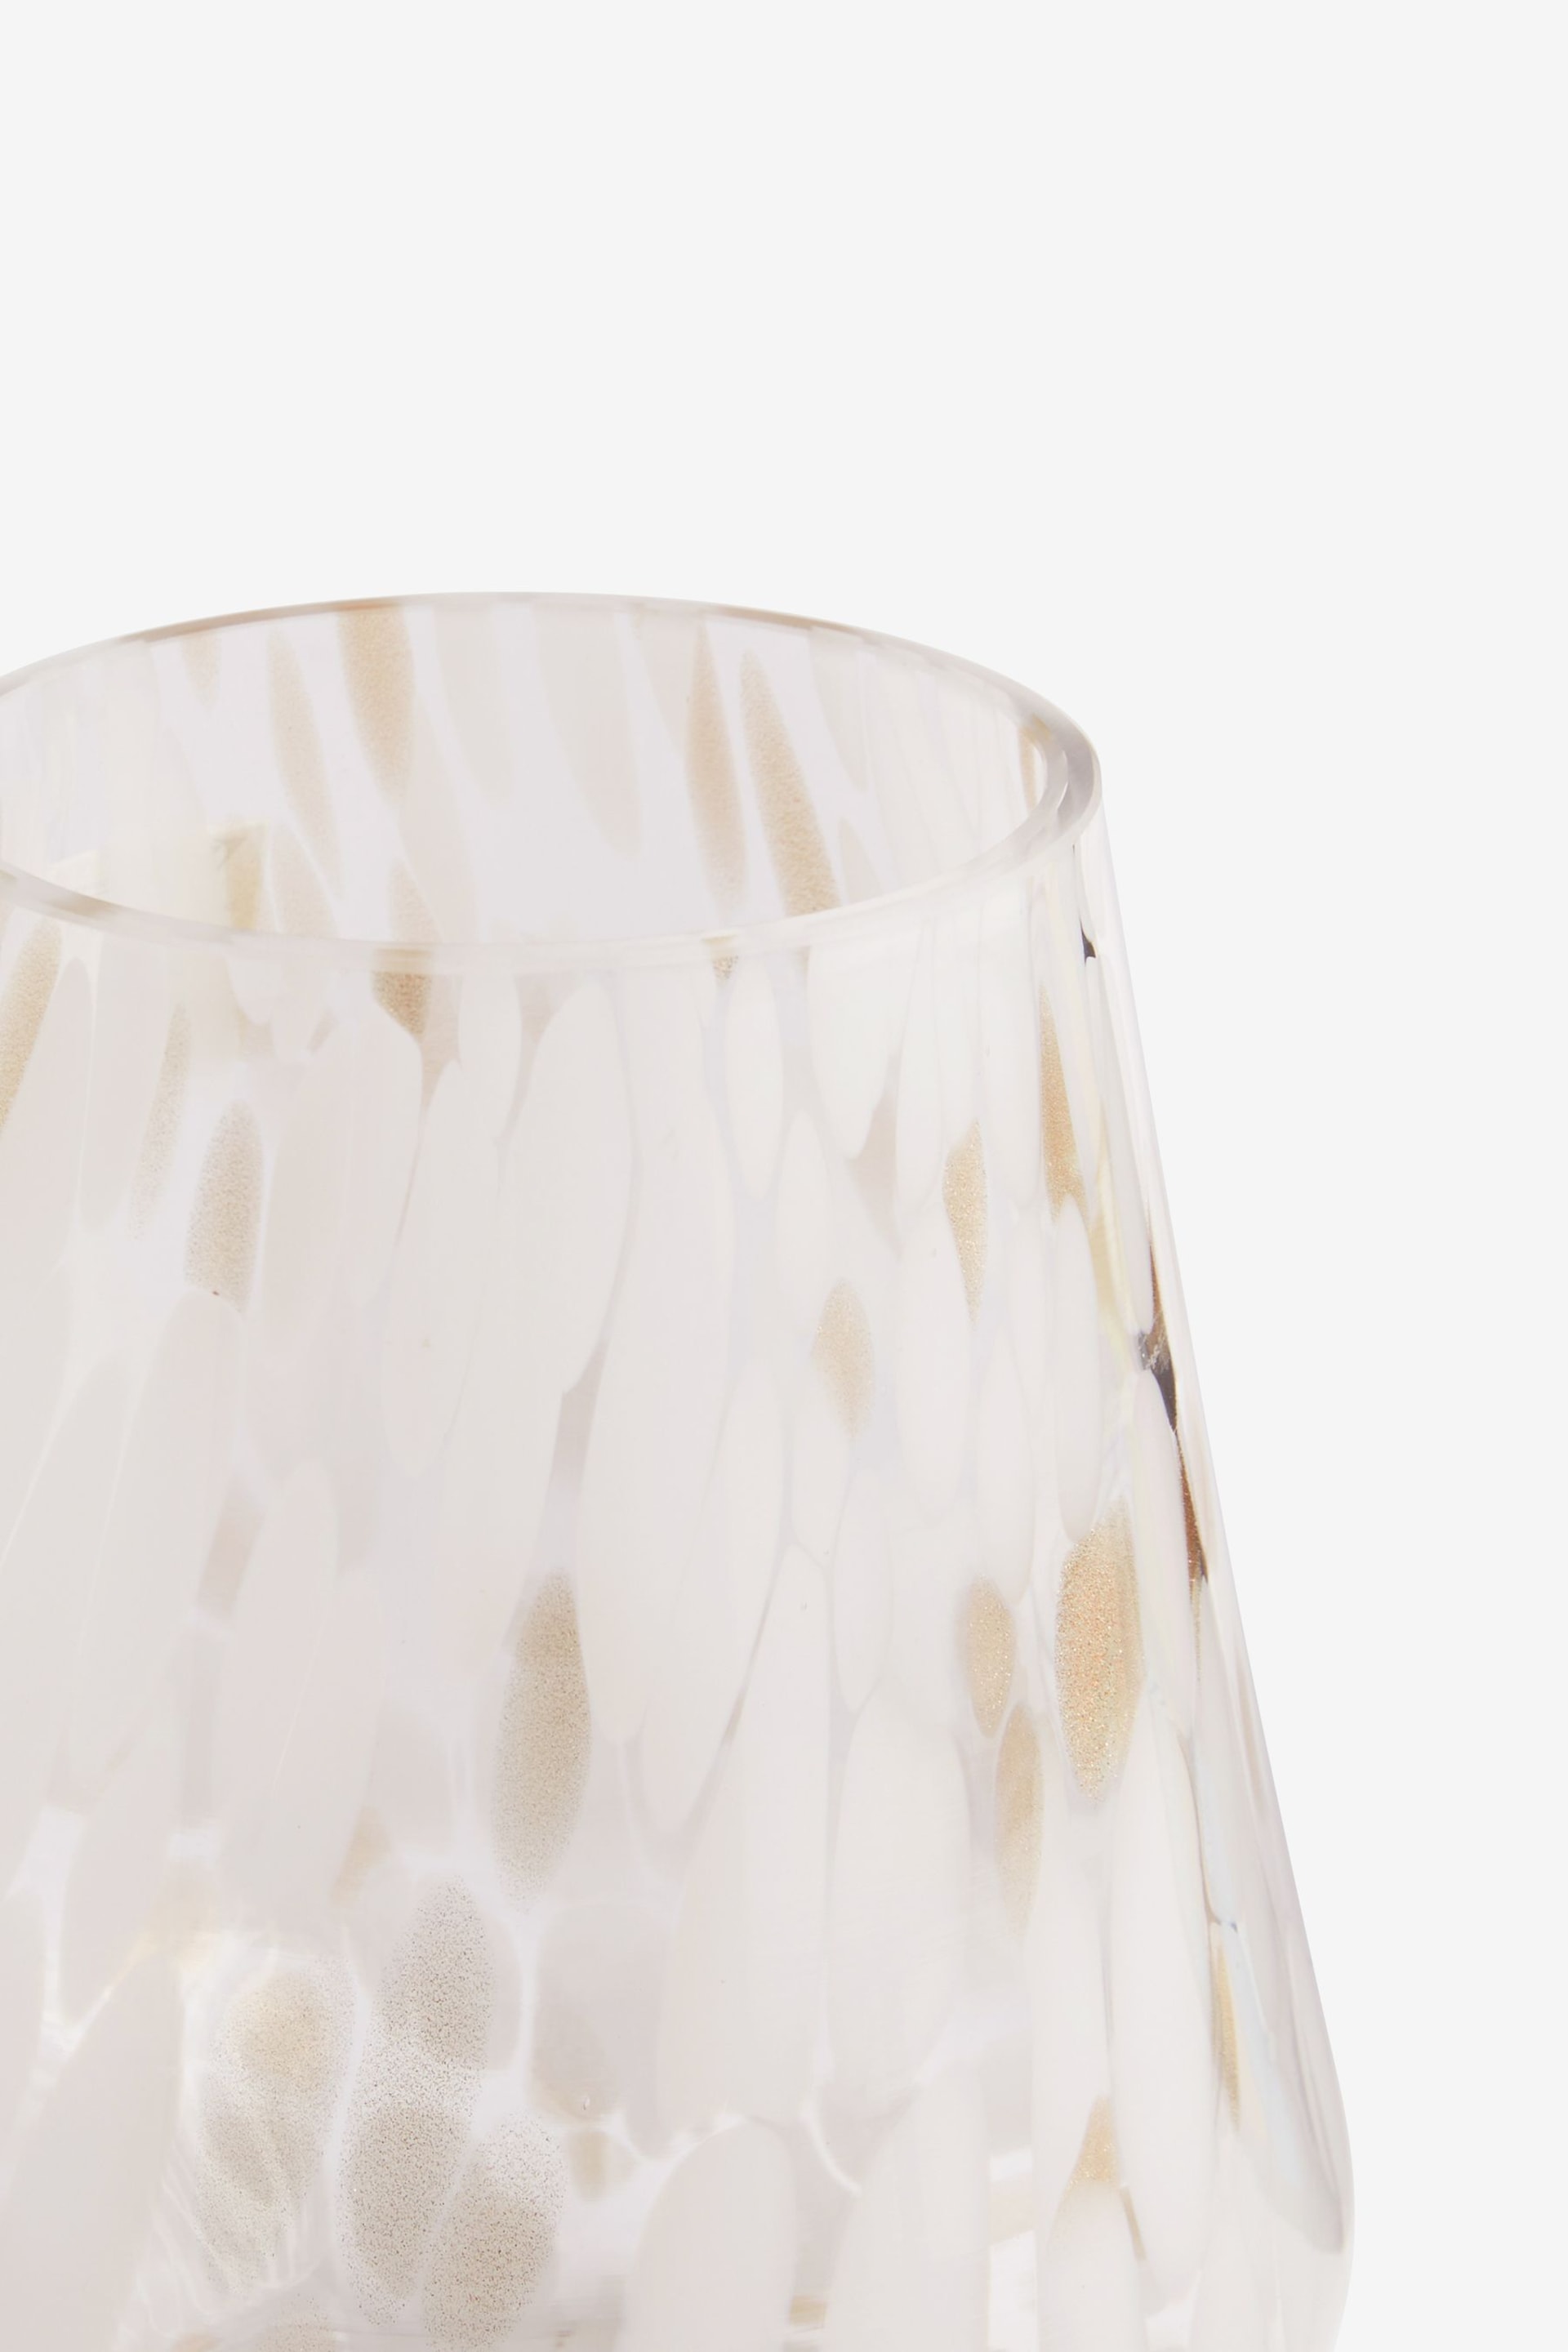 White Confetti Glass Hurricane - Image 5 of 6